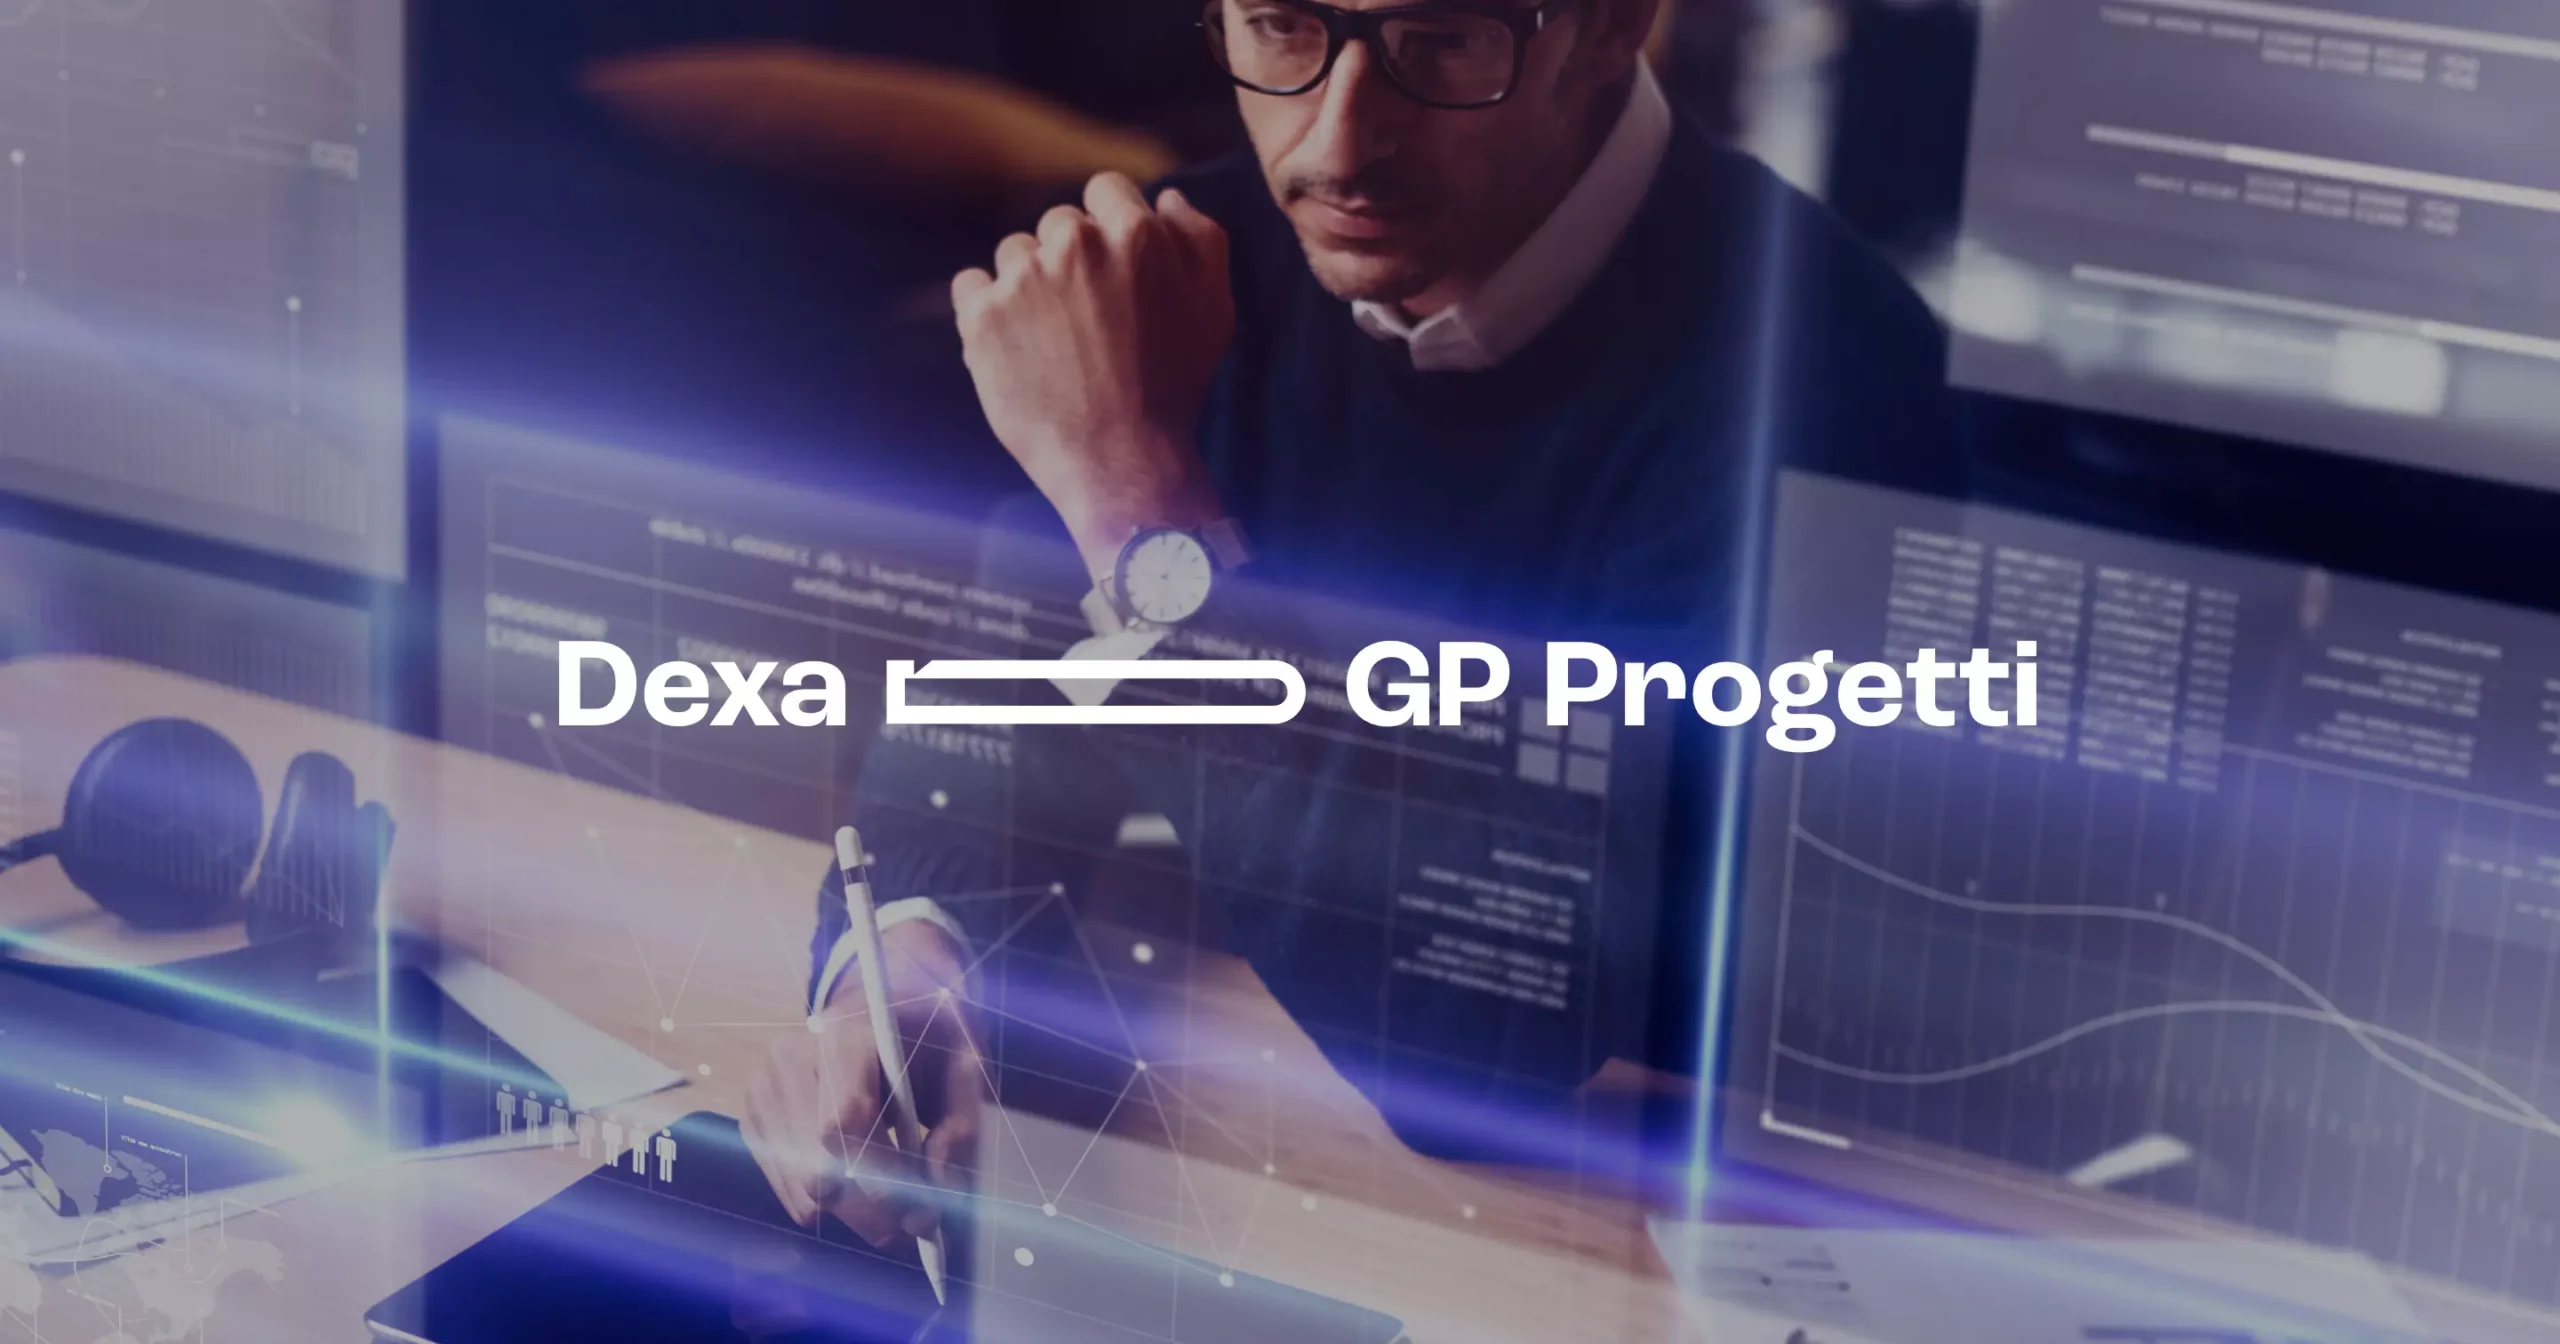 Dexa con il servizio eLeva per GP Progetti: strategia di marketing e nuovo sito per l’azienda che realizza software industriali innovativi.